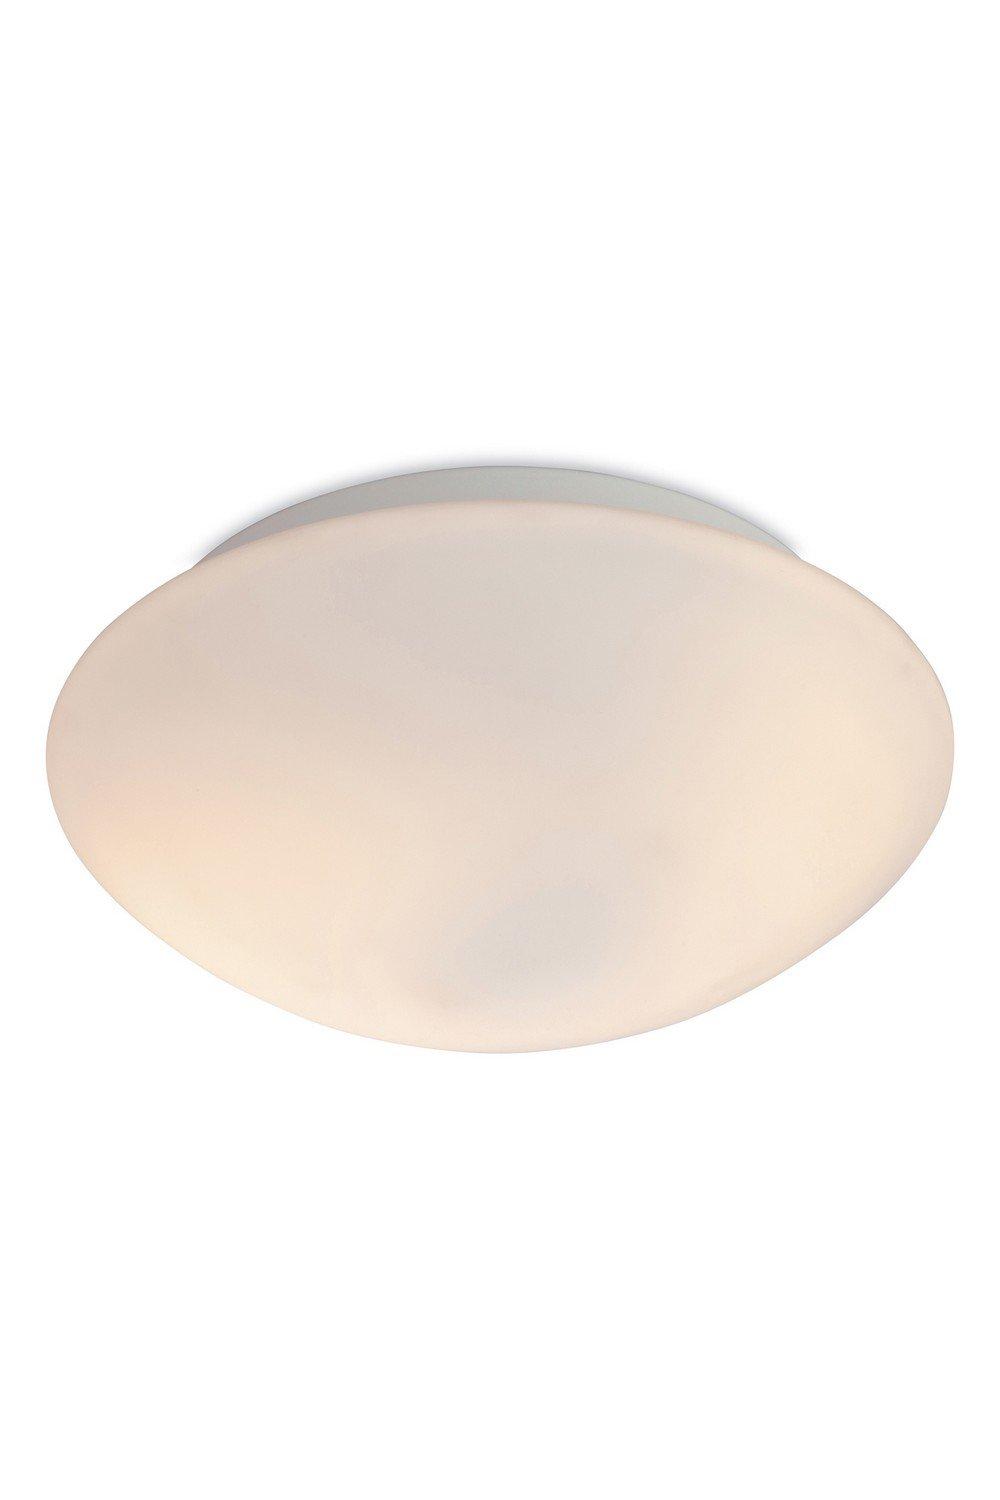 Vento 2 Light Flush Round Bathroom Ceiling Light Opal Glass IP44 E27